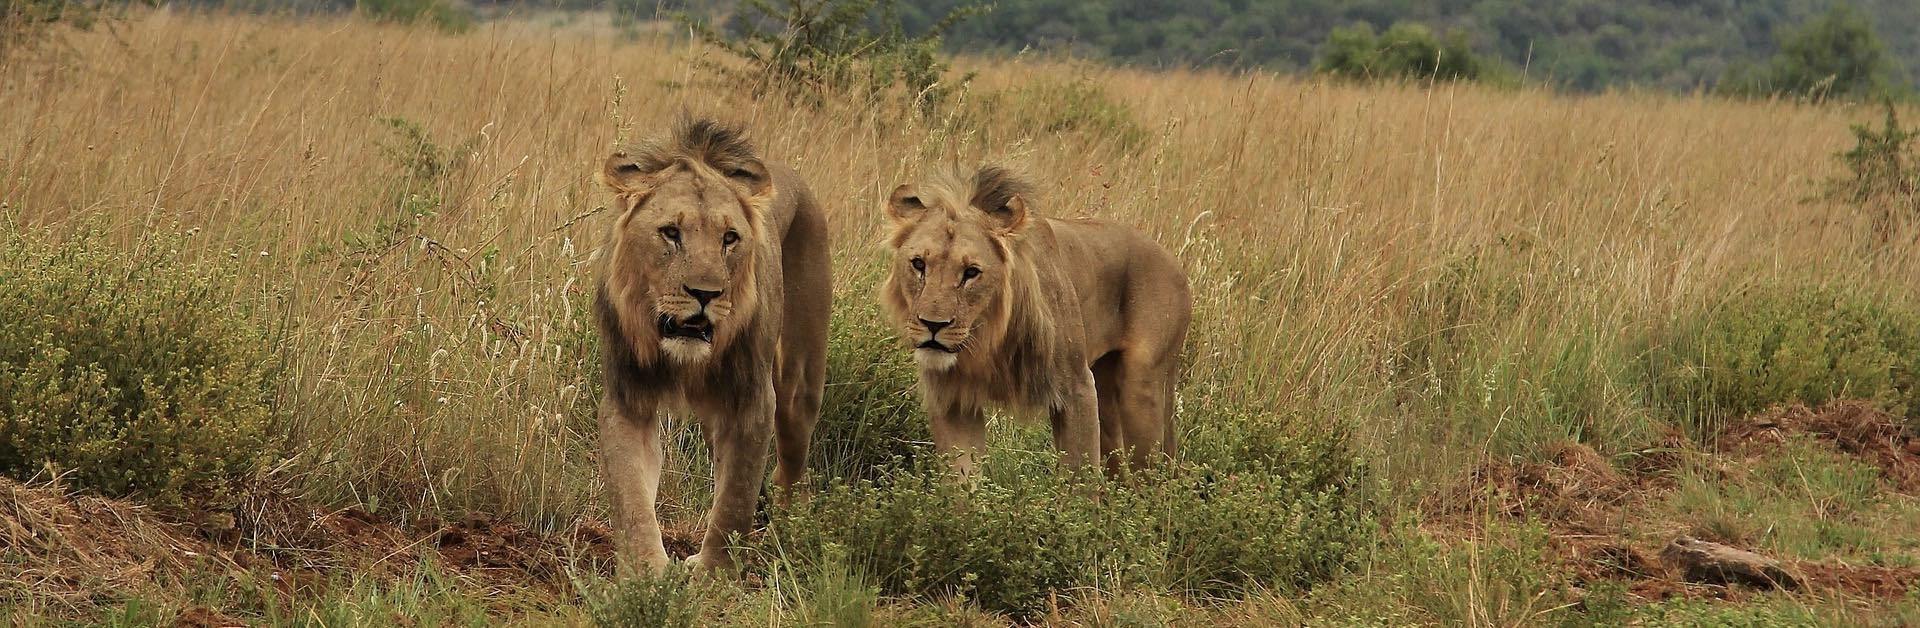 Deux Lions qui dominent dans la jungle africaine